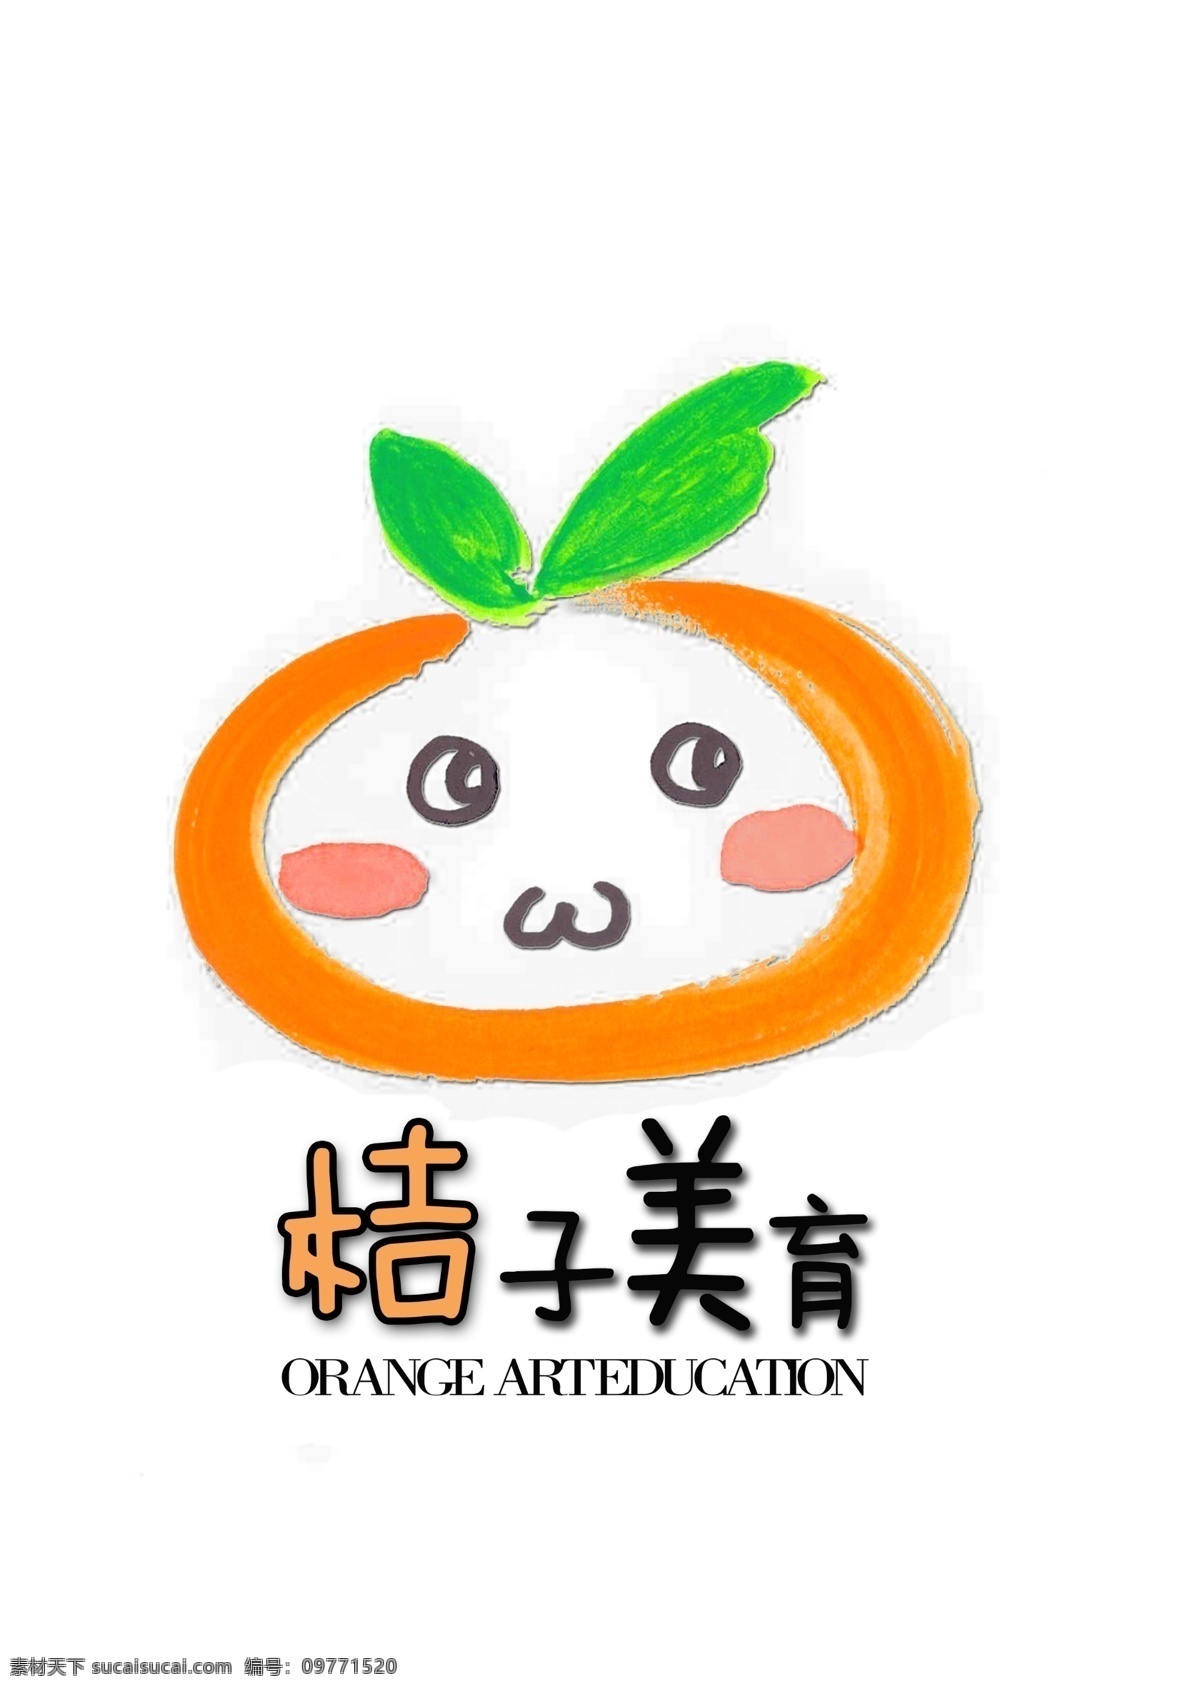 桔子 美育 logo 模板 教育 商标